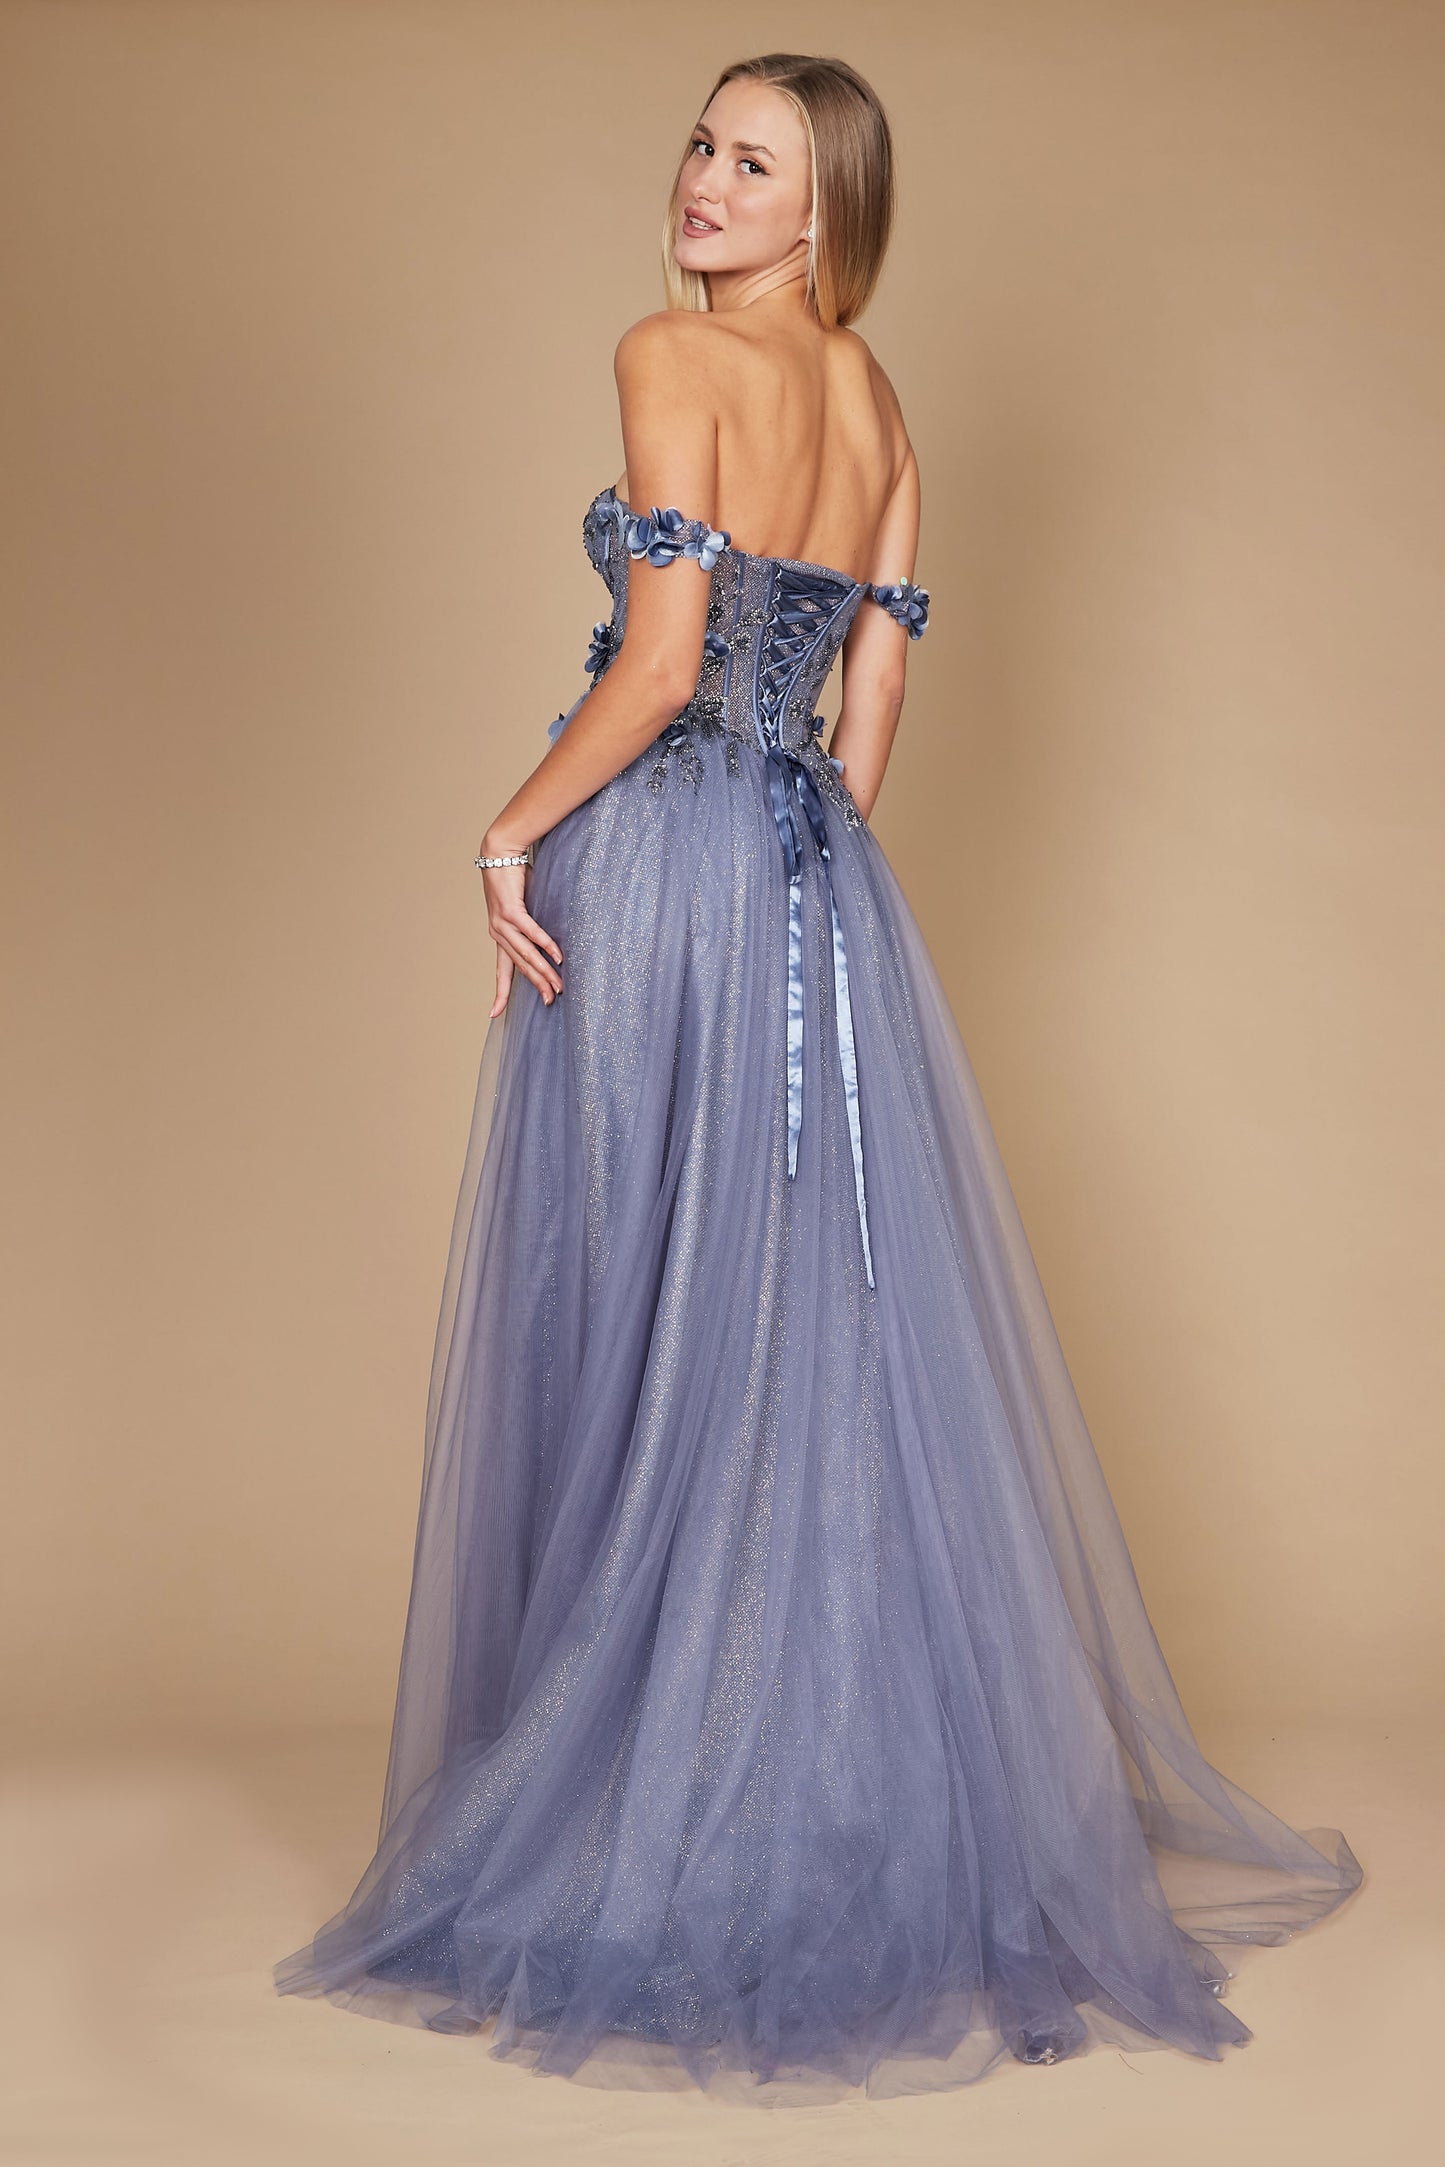 Prom Dresses Long Strapless Floral Off Shoulder Formal Prom Dress Periwinkle Blue